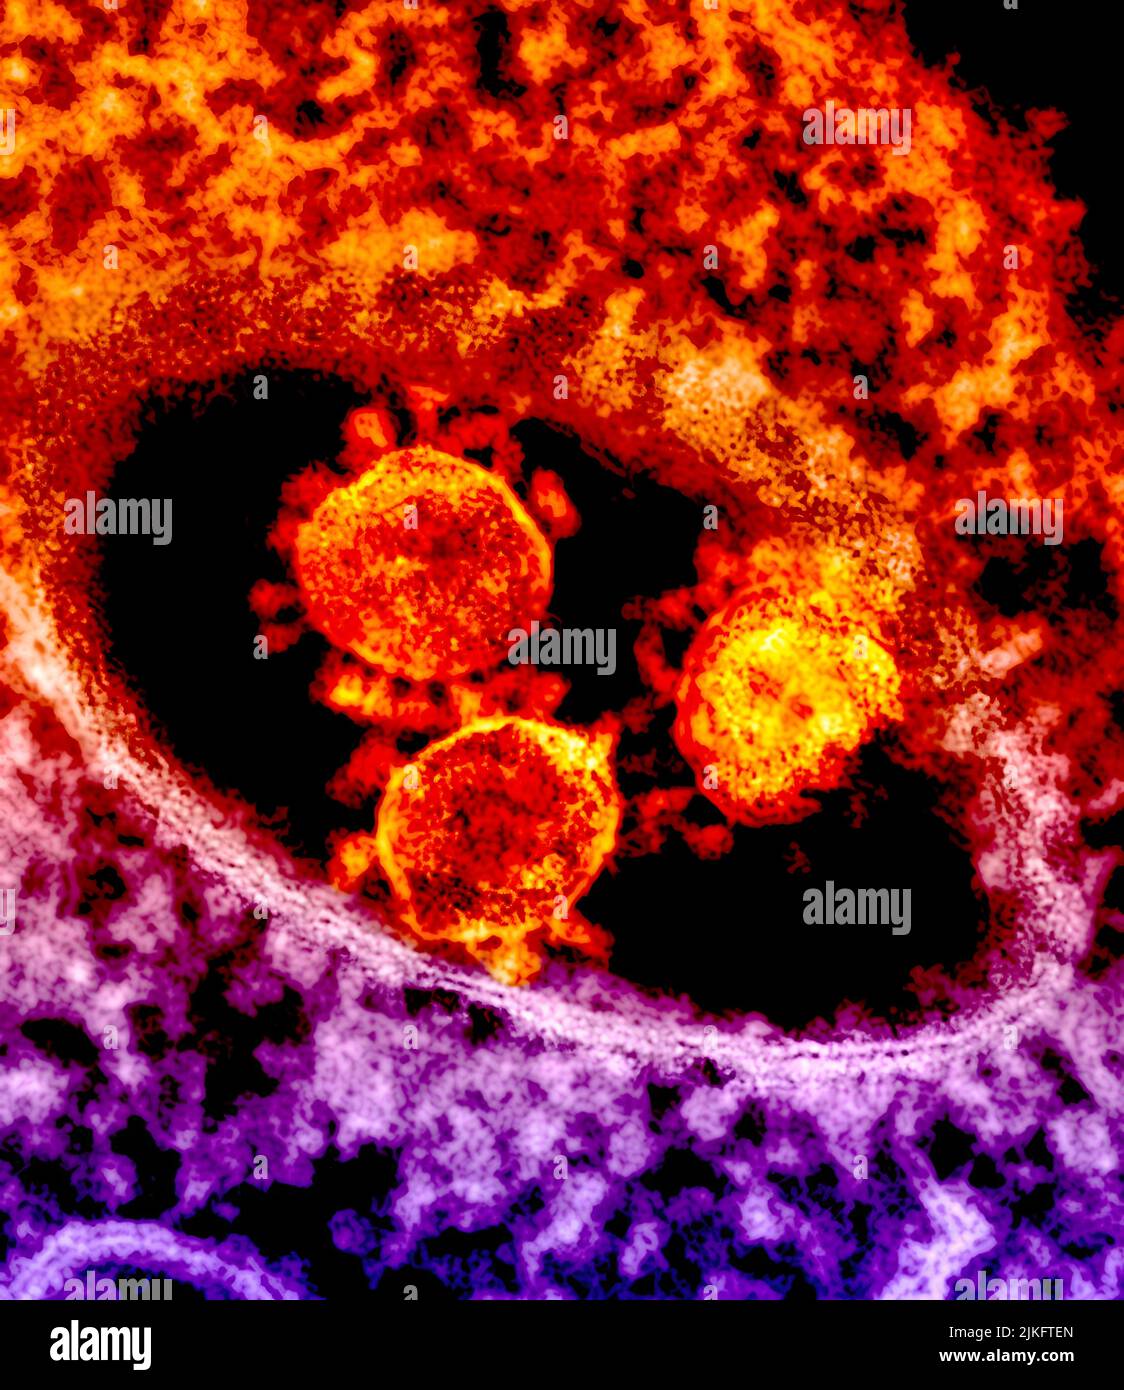 Gli oggetti appuntiti e rotondi al centro dell'immagine sono le particelle DI coronavirus MERS. Foto Stock